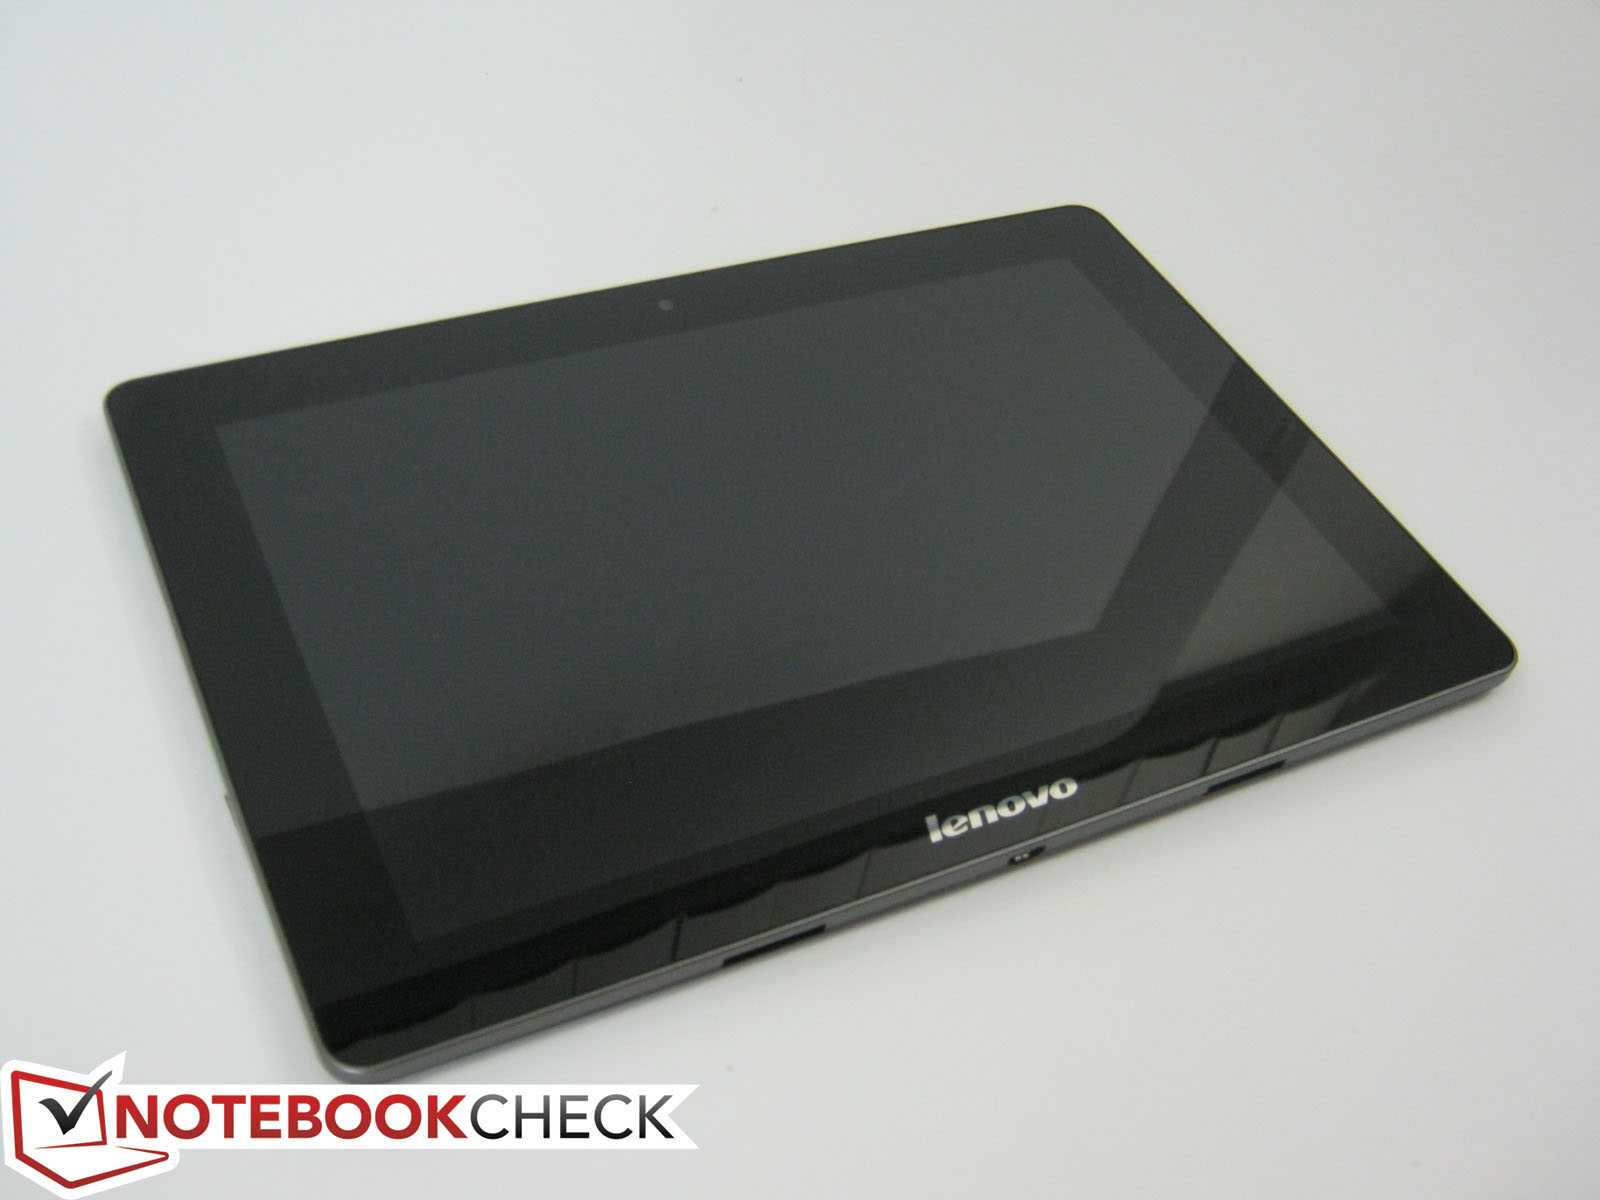 Lenovo ideatab s6000 16gb: купить в москве. цены магазинов на sravni.com